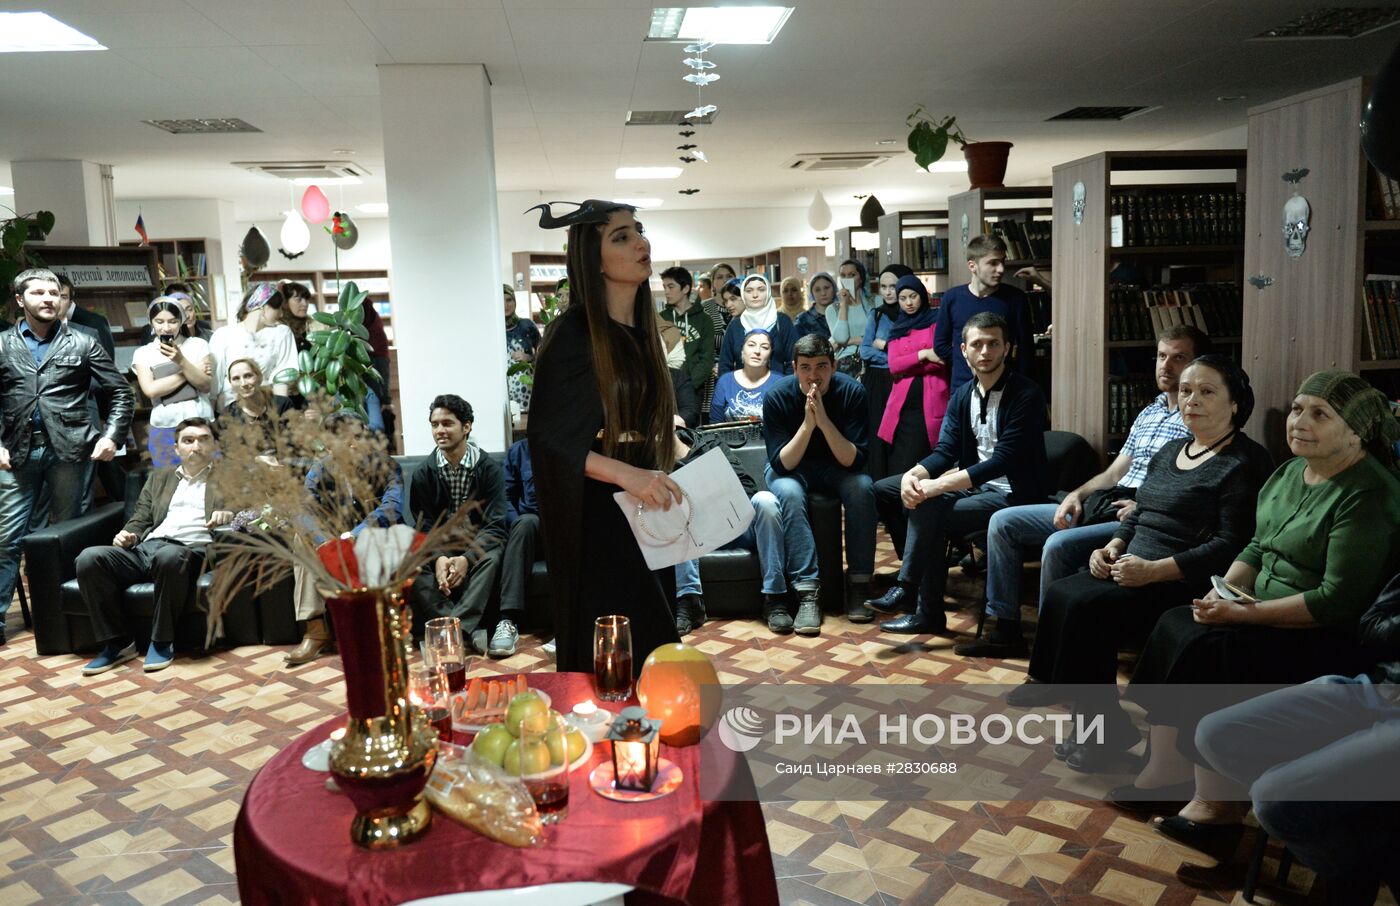 Всероссийская акция "Библионочь" в городах России